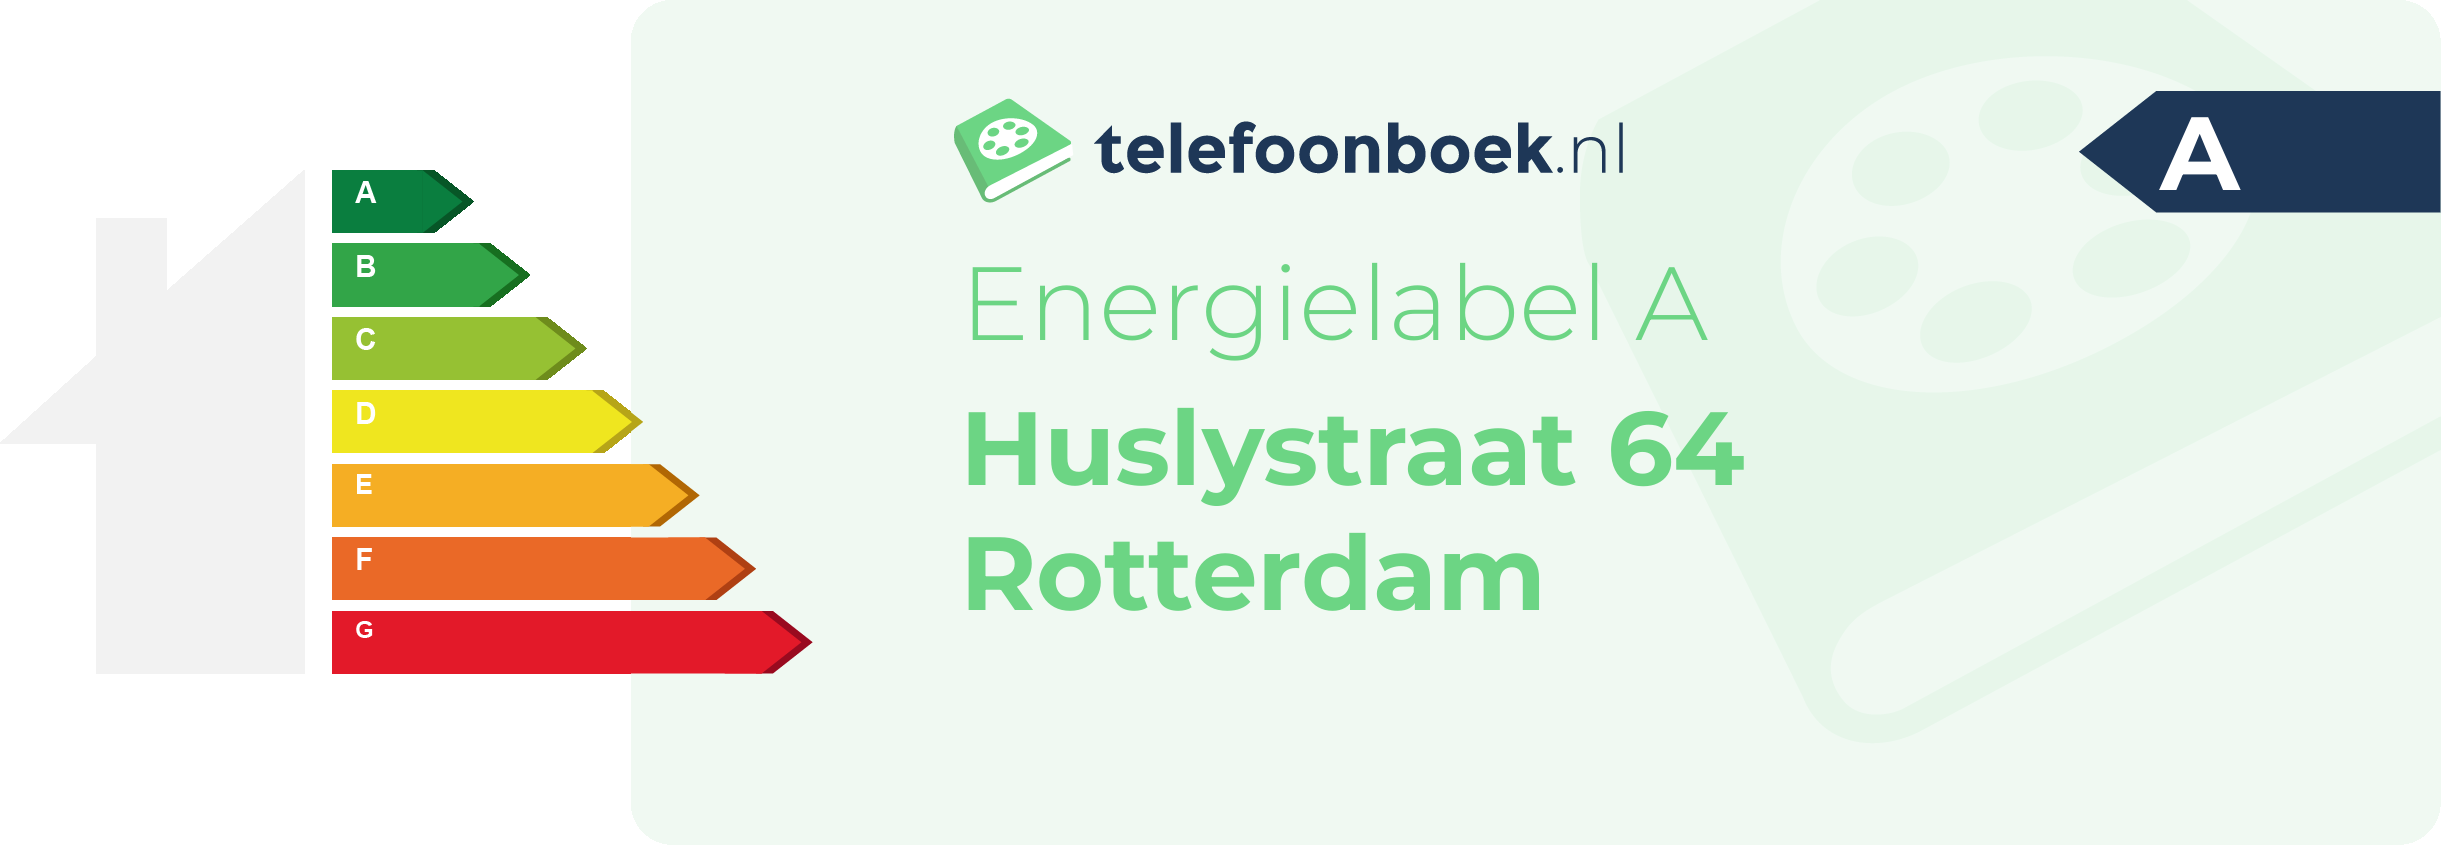 Energielabel Huslystraat 64 Rotterdam